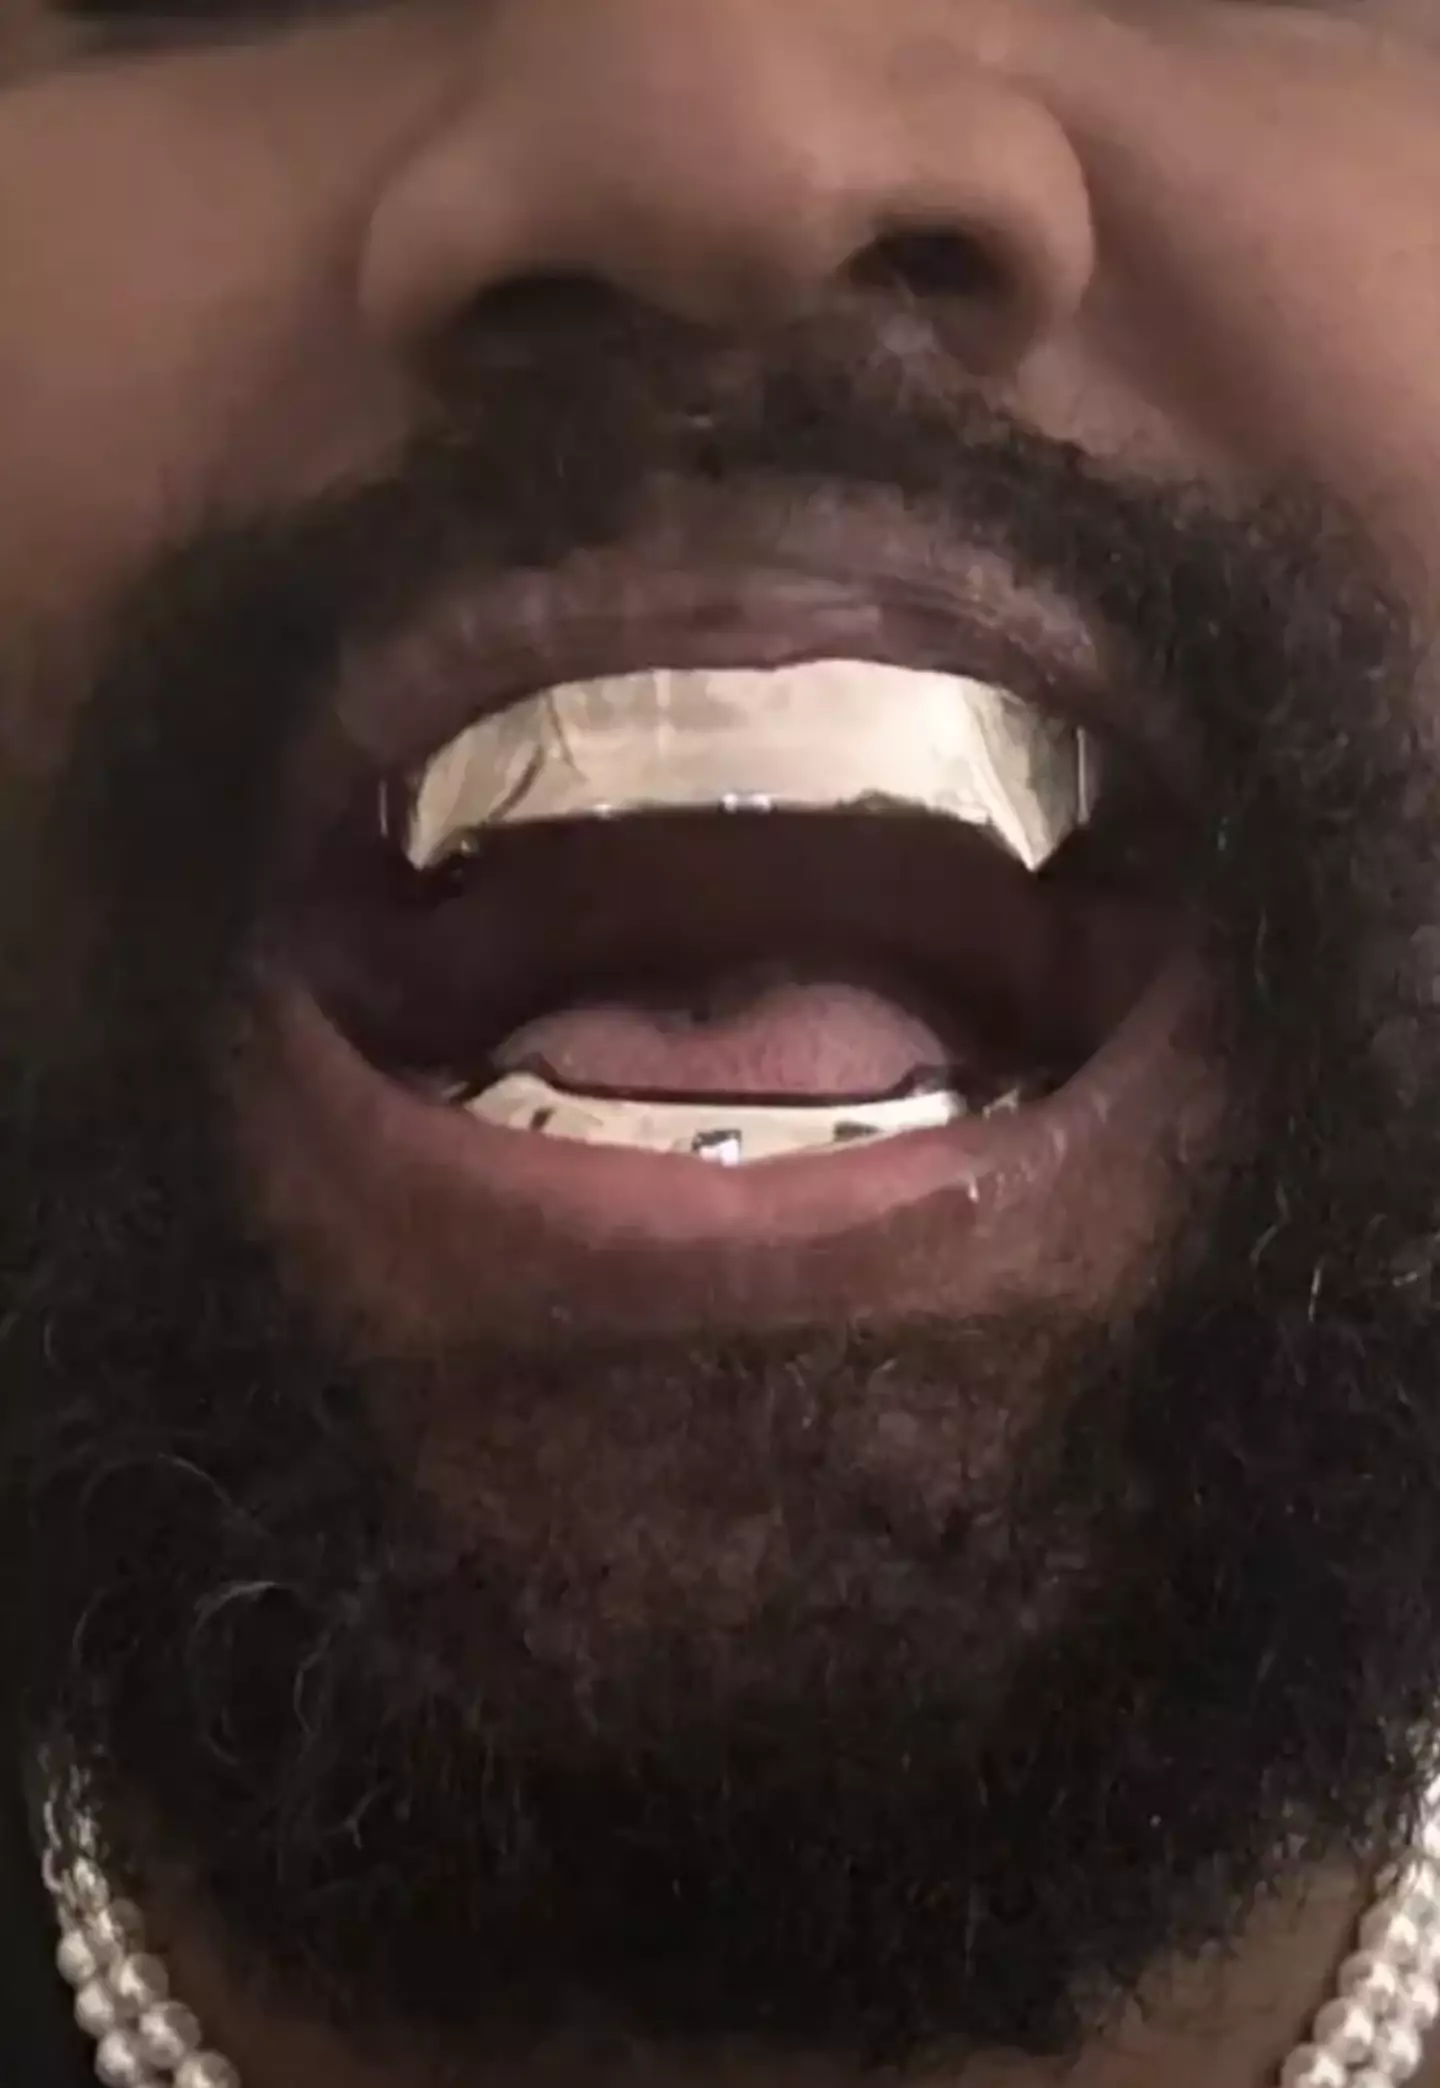 Ye showed off the dentures on Instagram.